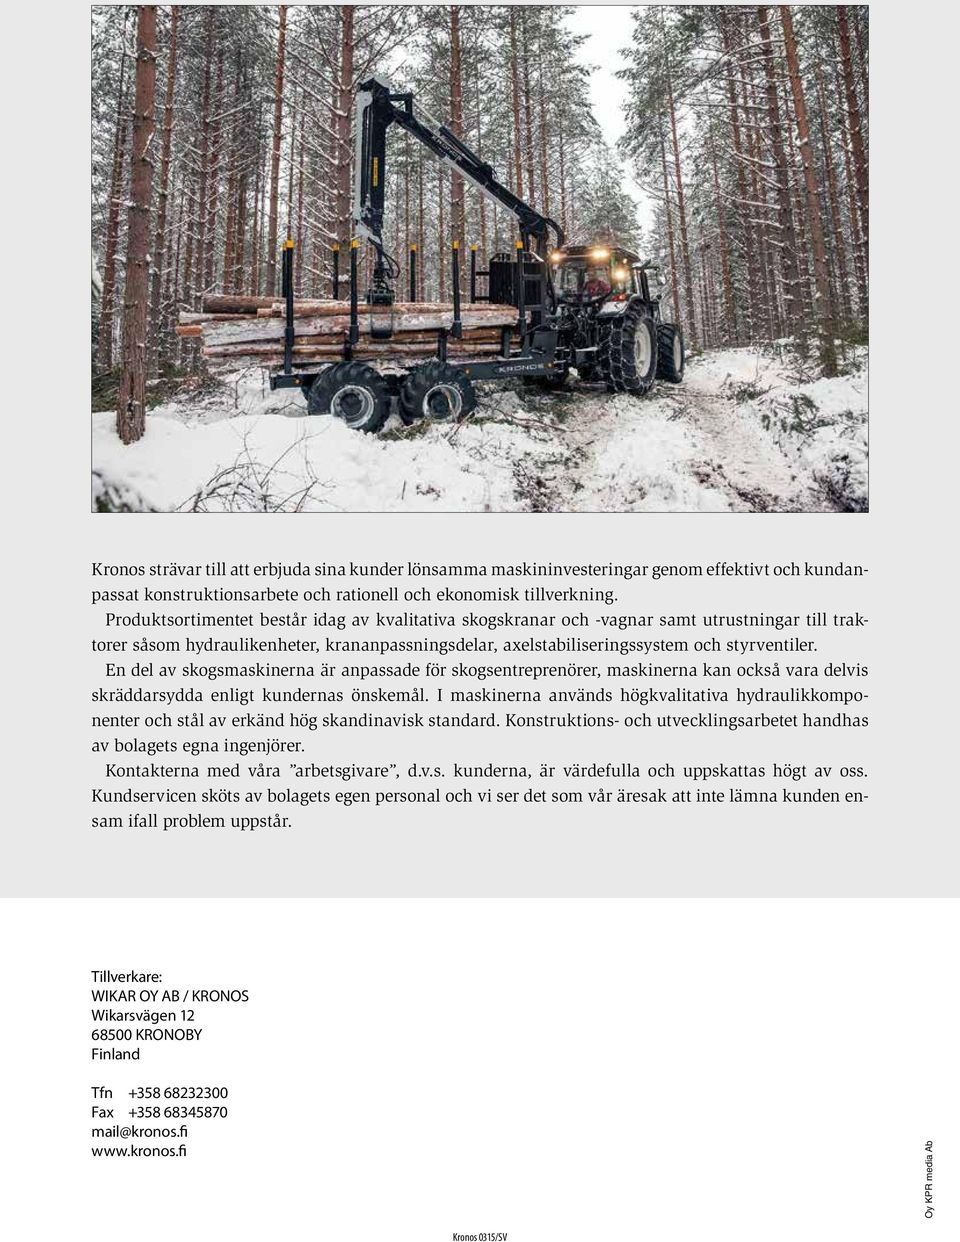 En del av skogsmaskinerna är anpassade för skogsentreprenörer, maskinerna kan också vara delvis skräddarsydda enligt kundernas önskemål.